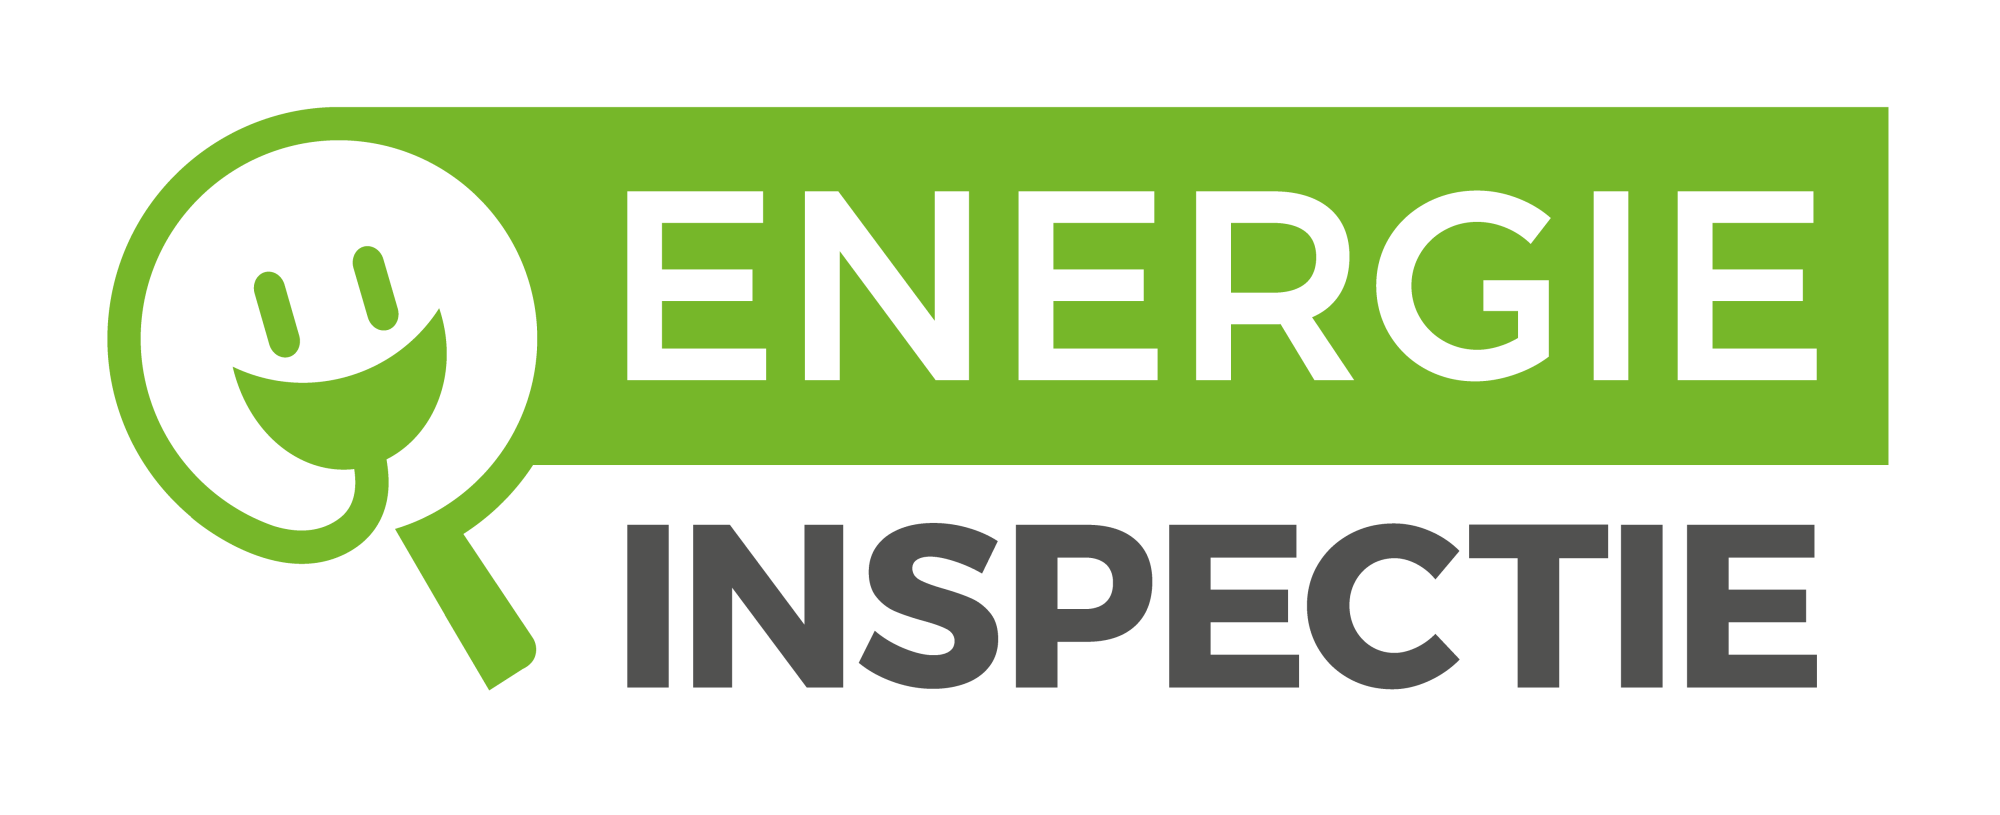 Energie Inspectie Logo groen grijs zonder achtergrond